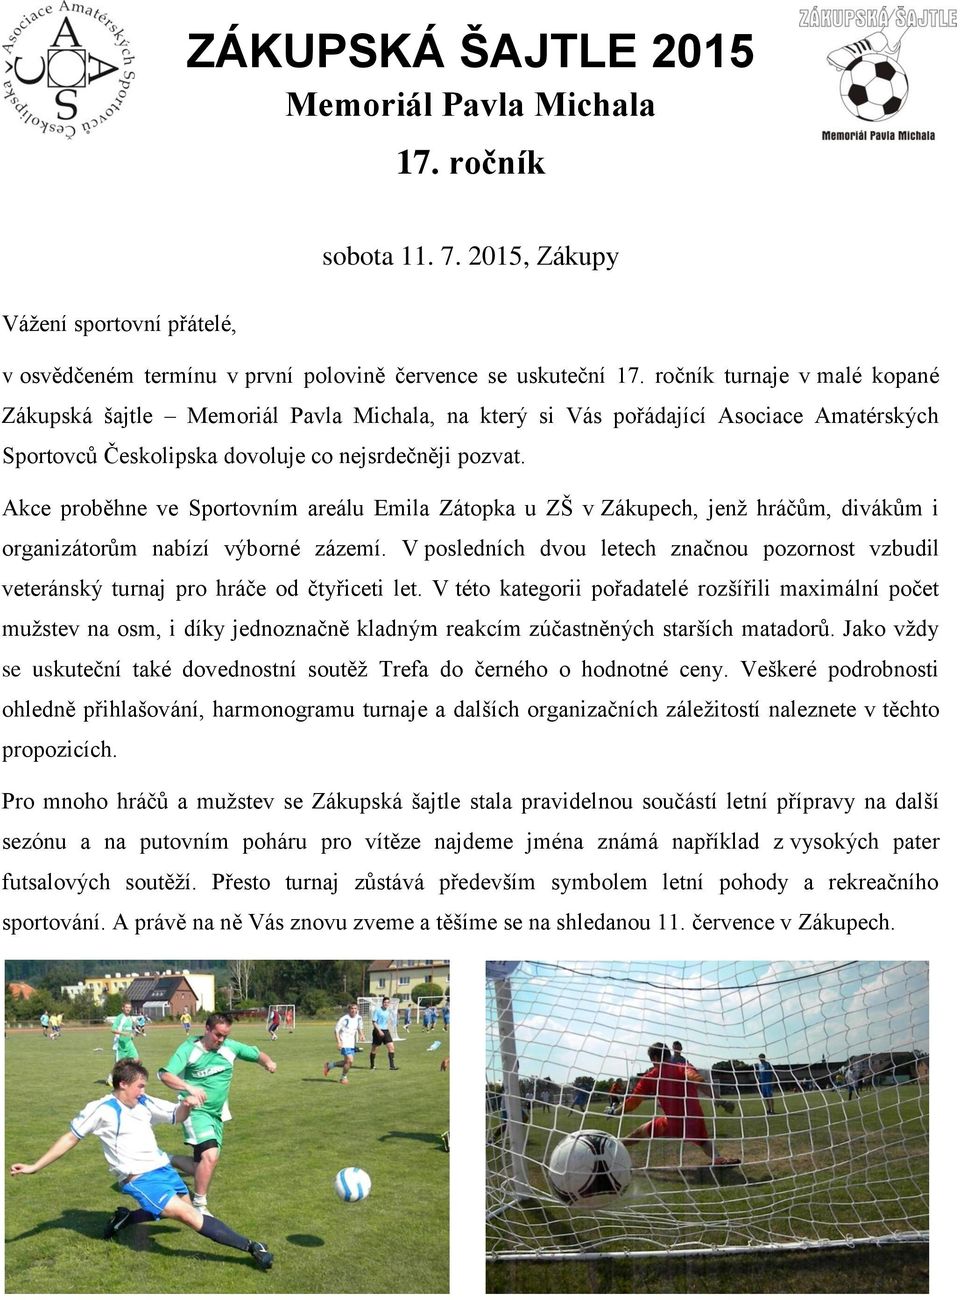 Akce proběhne ve Sportovním areálu Emila Zátopka u ZŠ v Zákupech, jenž hráčům, divákům i organizátorům nabízí výborné zázemí.